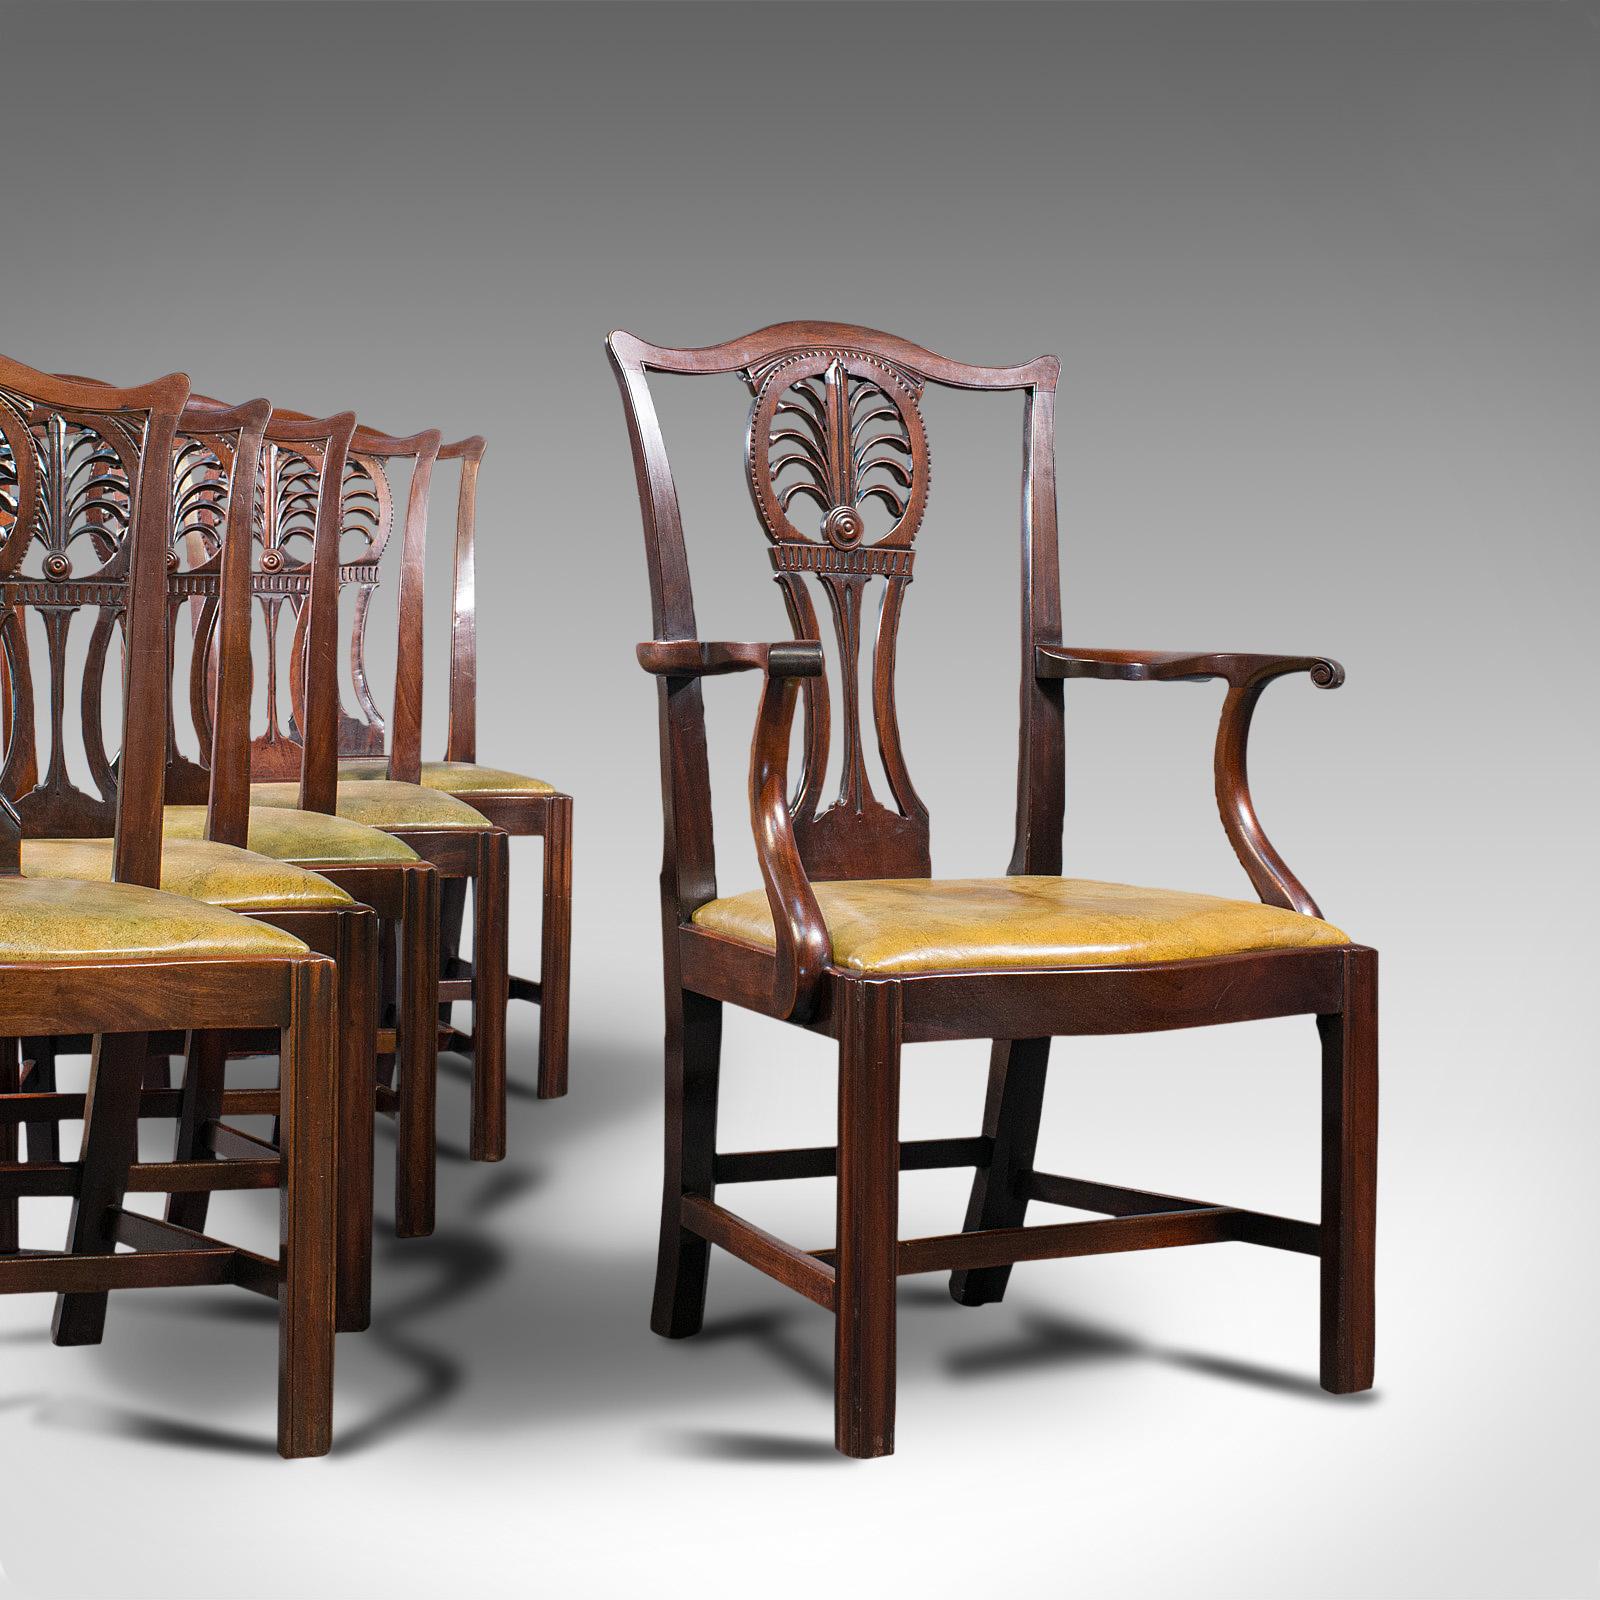 Il s'agit d'un ensemble ancien de 6 chaises de salle à manger. Une chaise King anglaise en acajou et cuir et une suite de 5 sièges, datant du début de la période victorienne, vers 1850.

Une salle à manger d'une grande distinction antique
Présentant